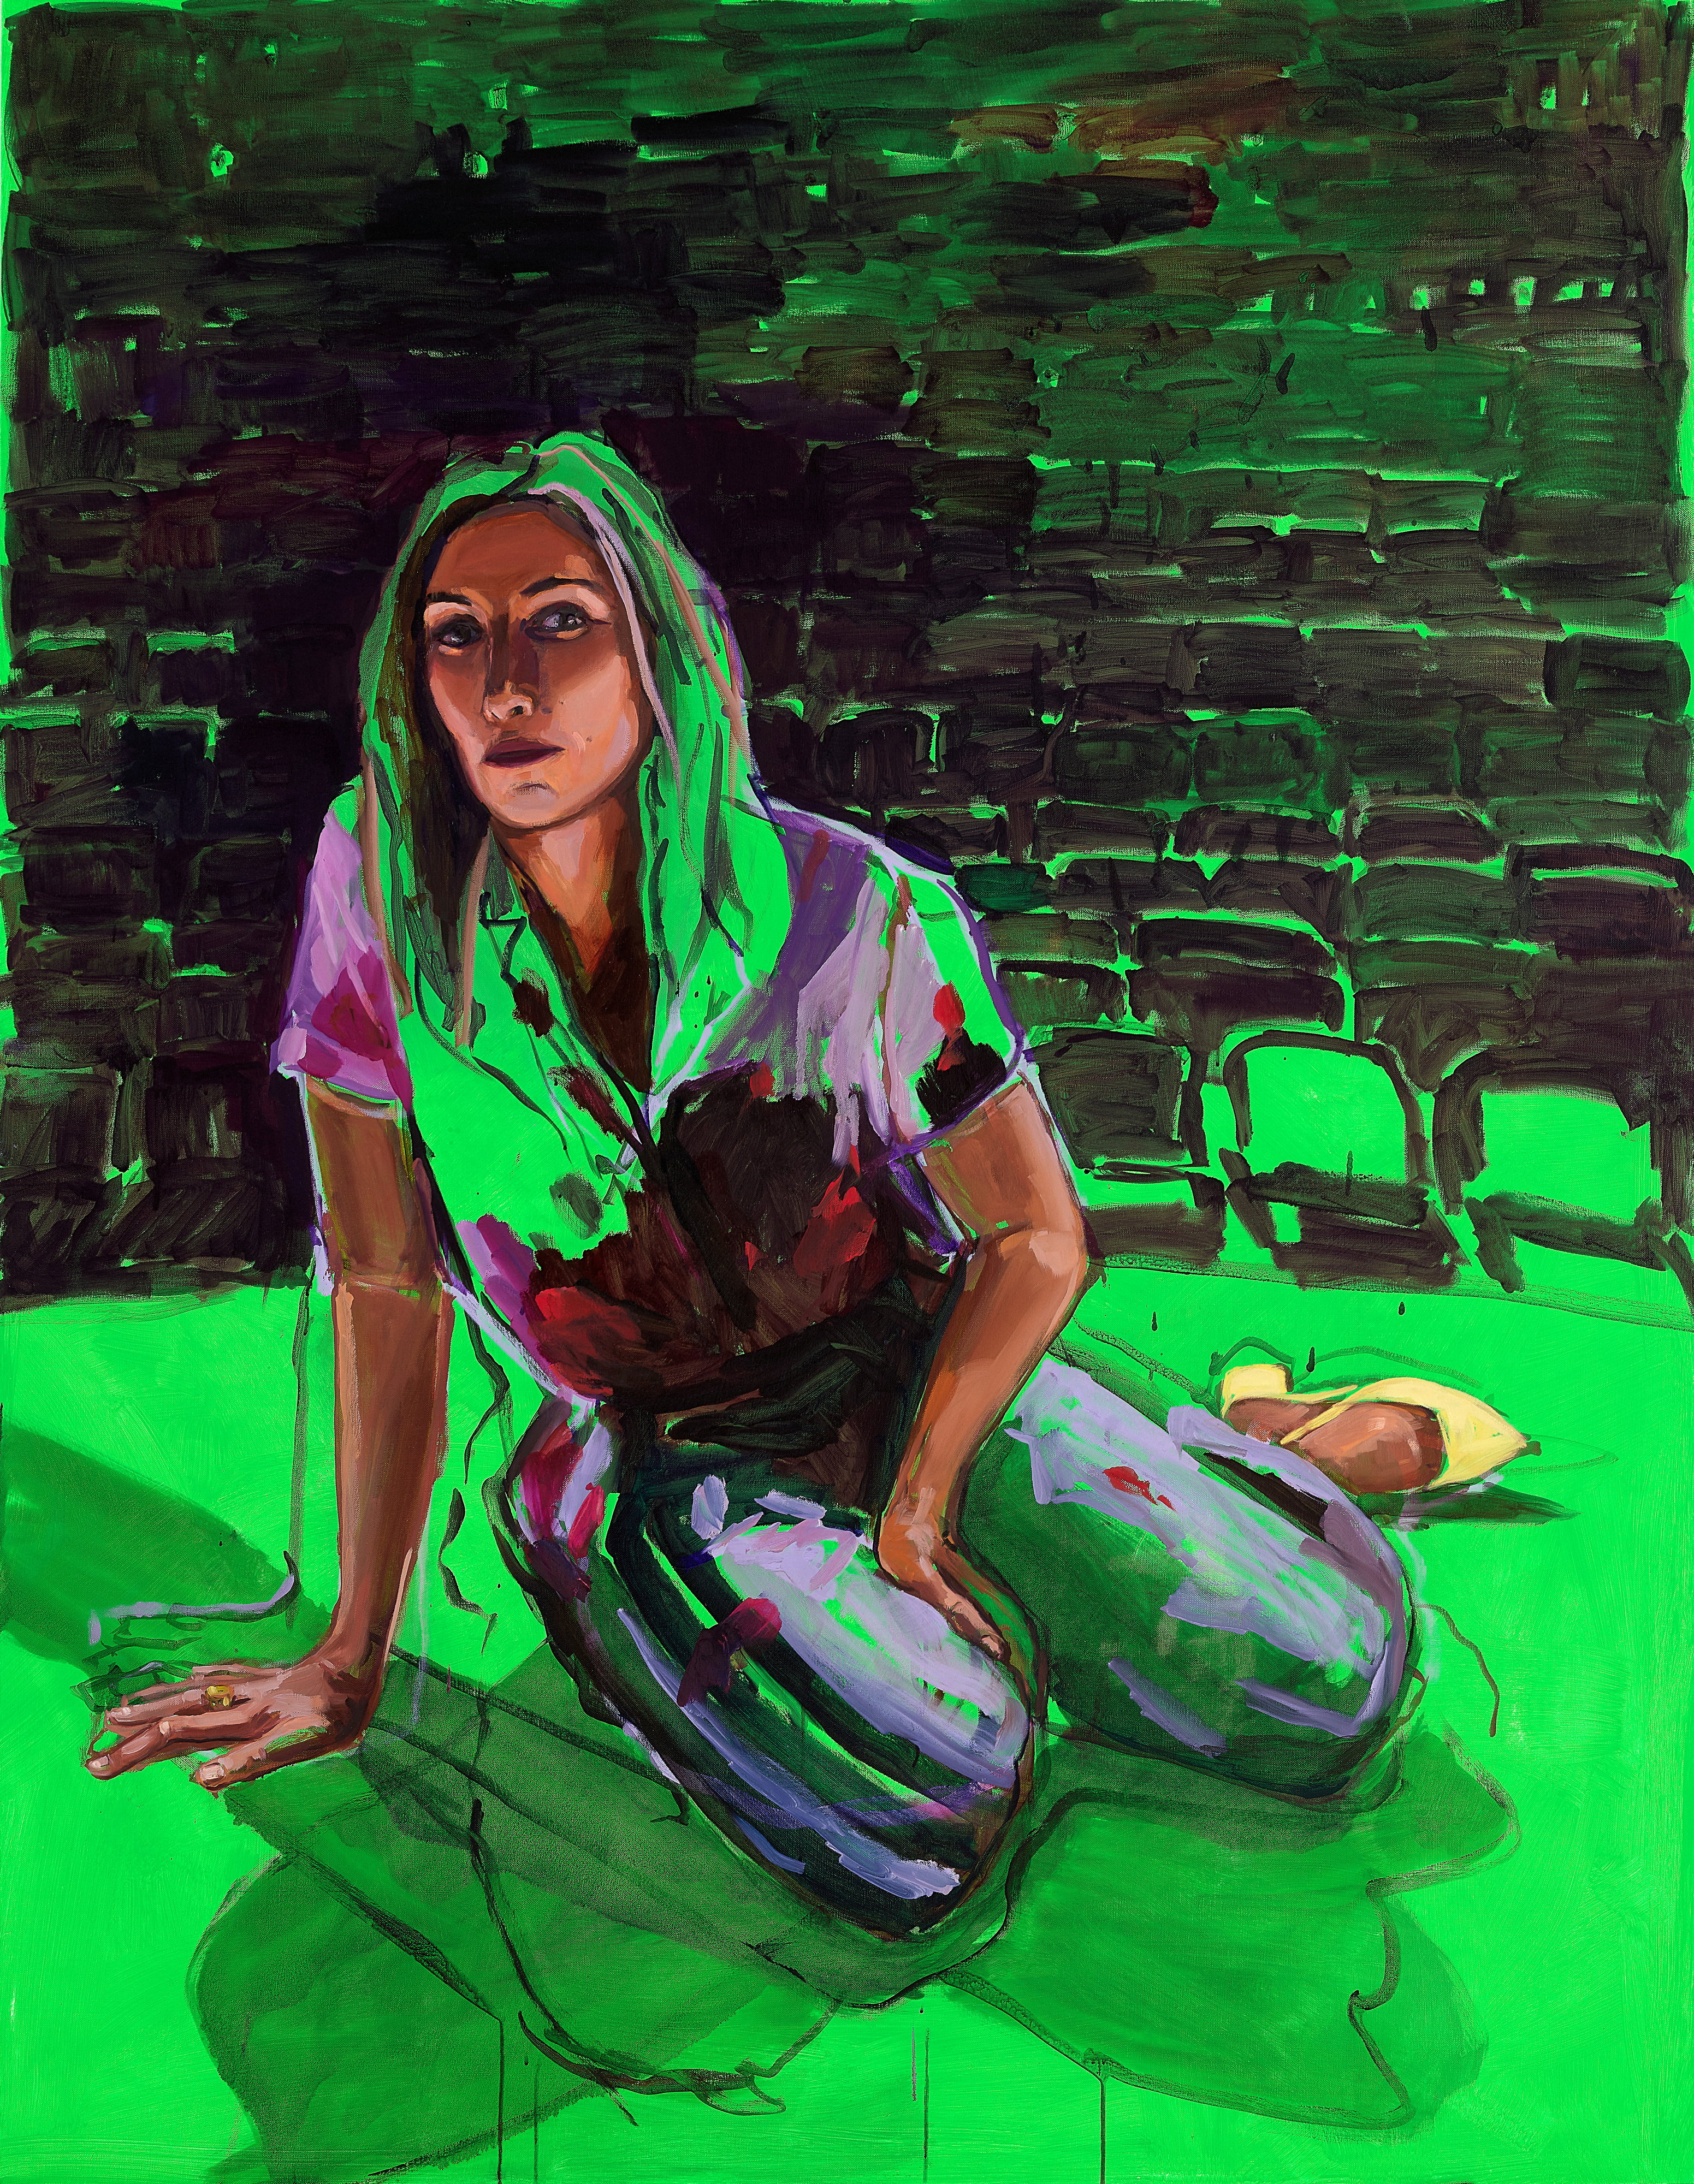 Un portrait semi-réaliste vert vif de Claudia Karvan, une femme blanche d'âge moyen aux cheveux longs, assise sur une scène de théâtre.